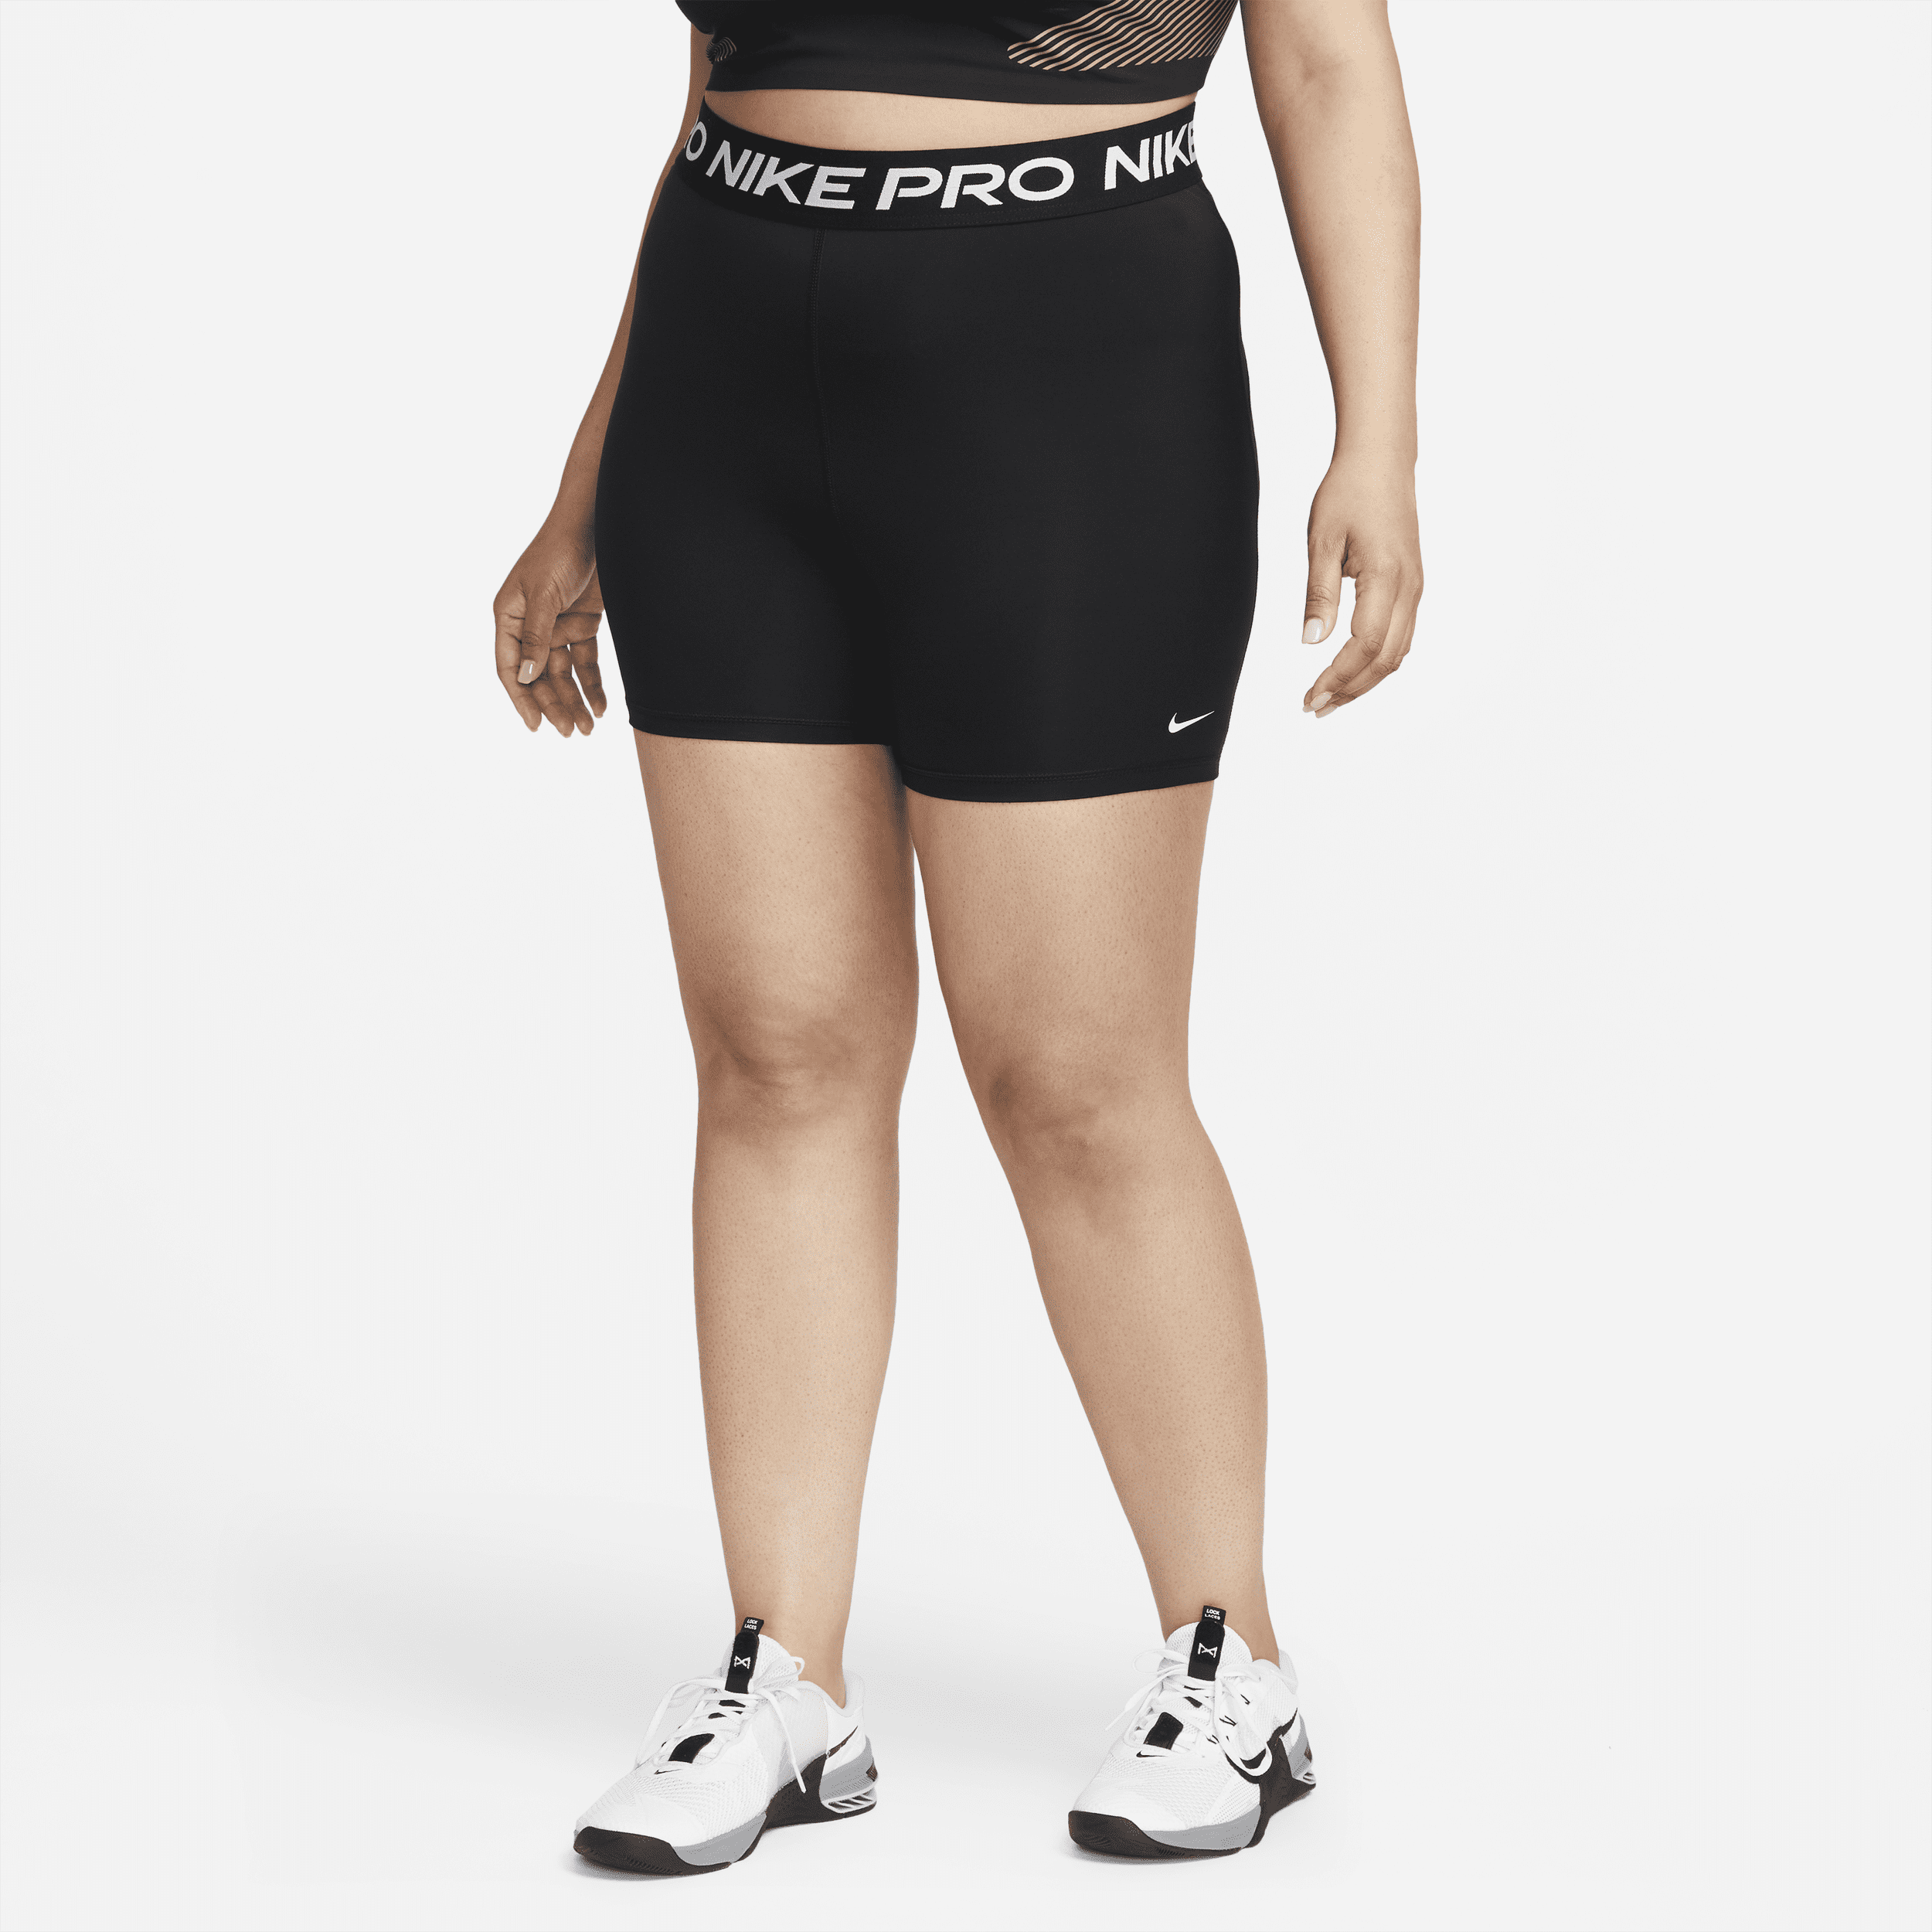 Nike Pro 365-shorts (13 cm) til kvinder (plus size) - sort